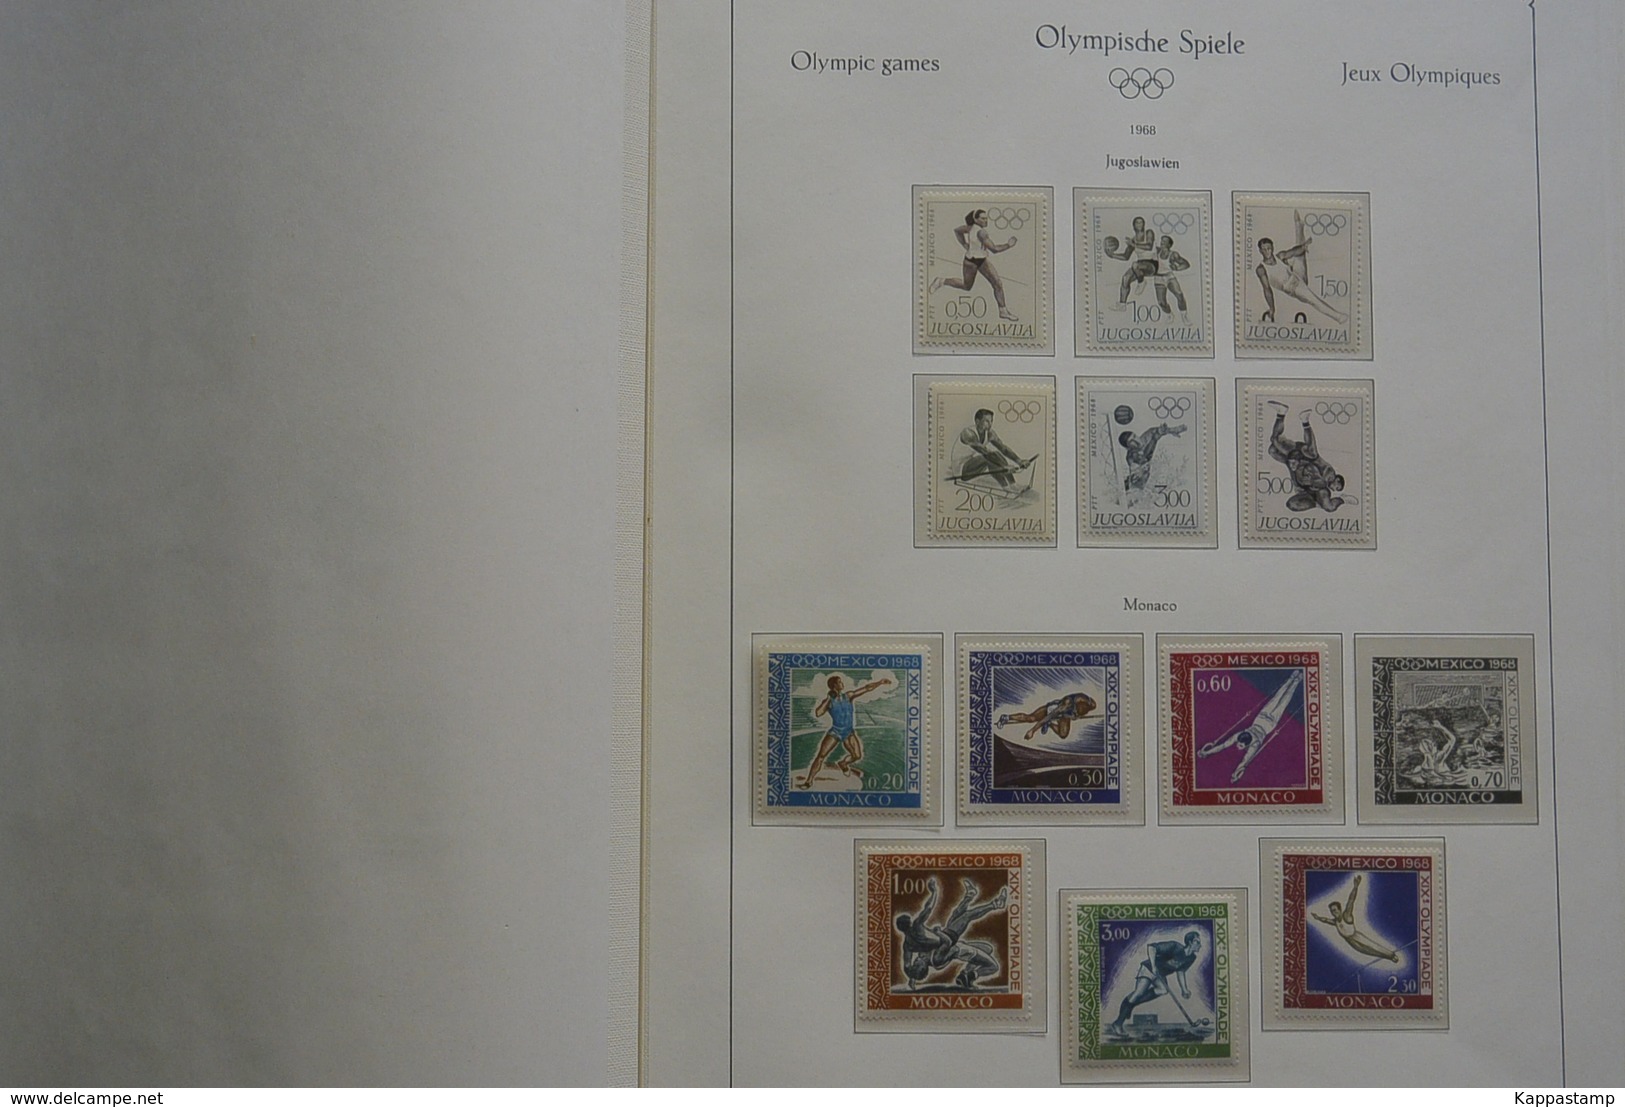 Giocchi Olimpici raccolta in Album Stampato  1968 ** Vedi scansione